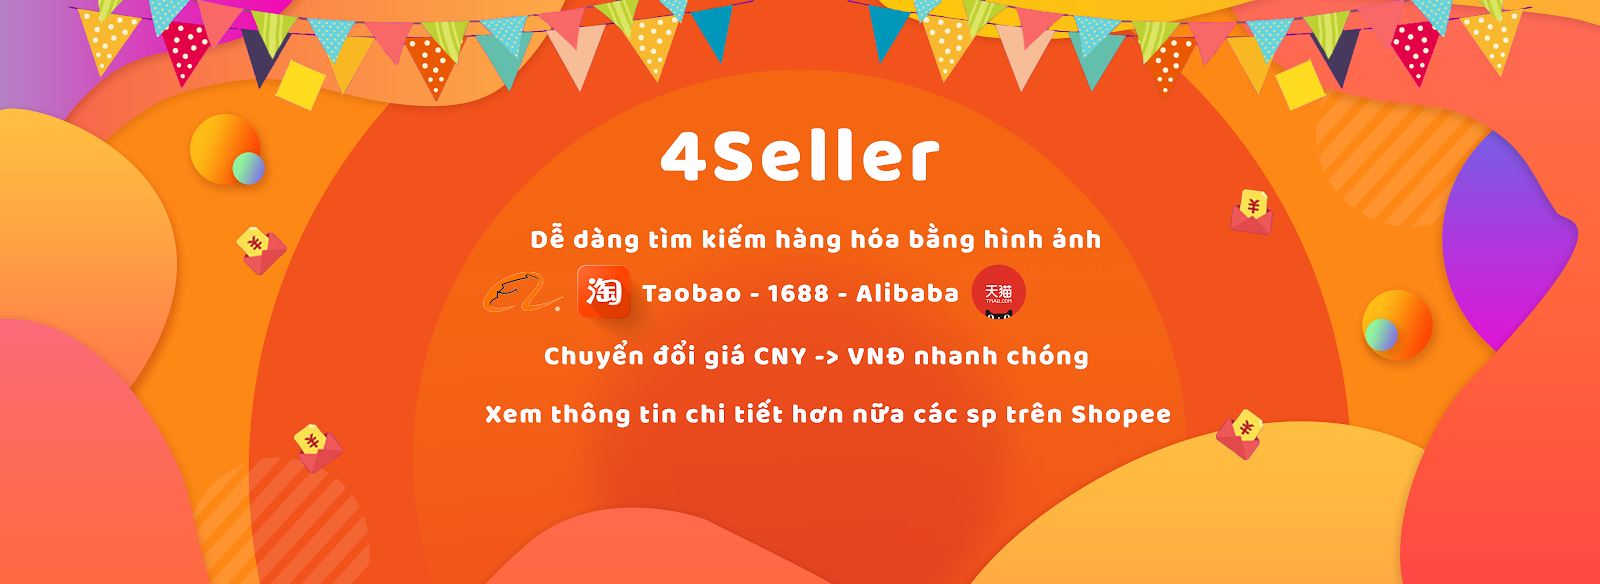 4seller-banner